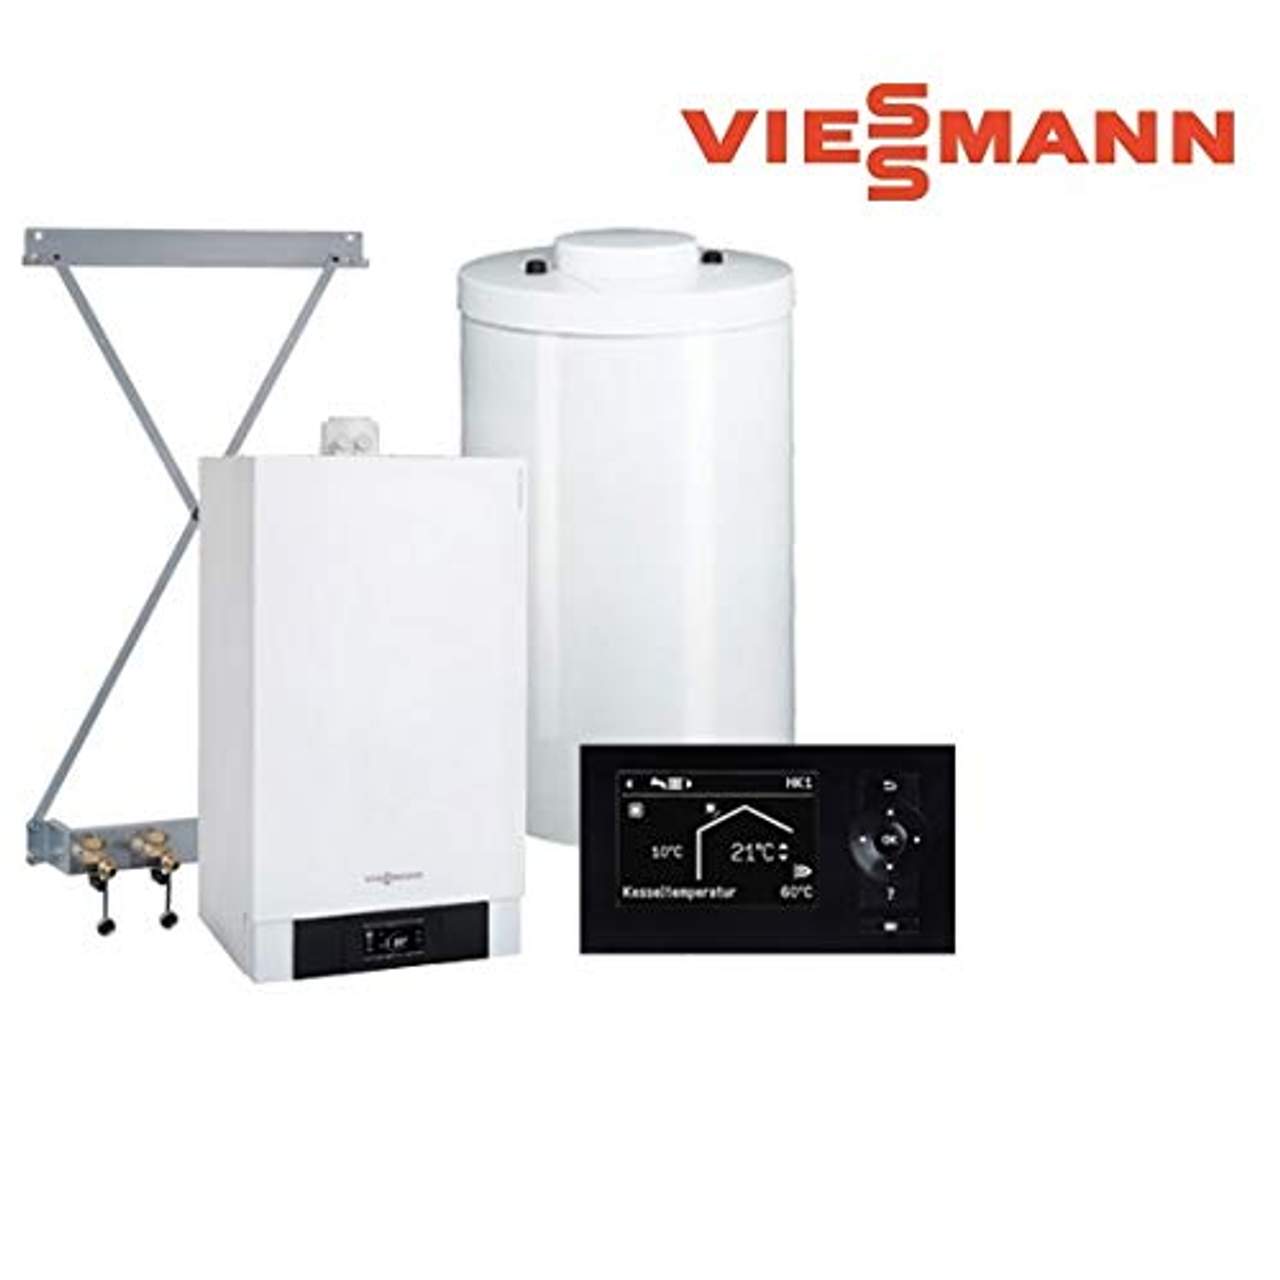 Details zu Viessmann Paket Vitodens 200-W 13 kW